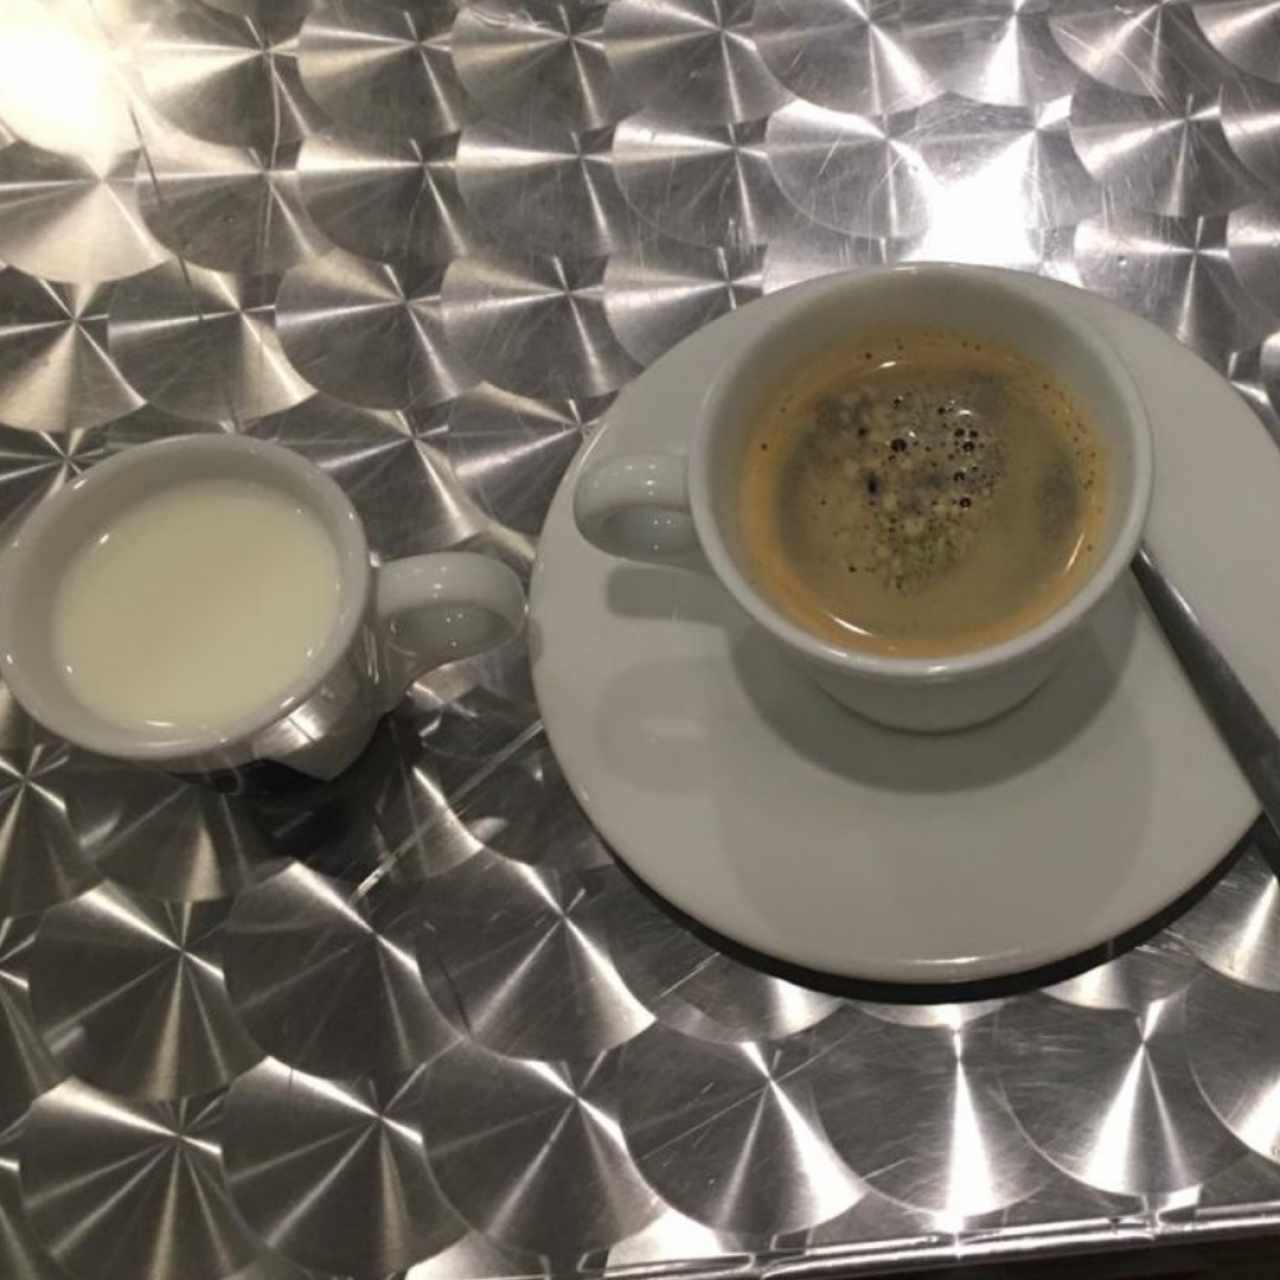 cafecito